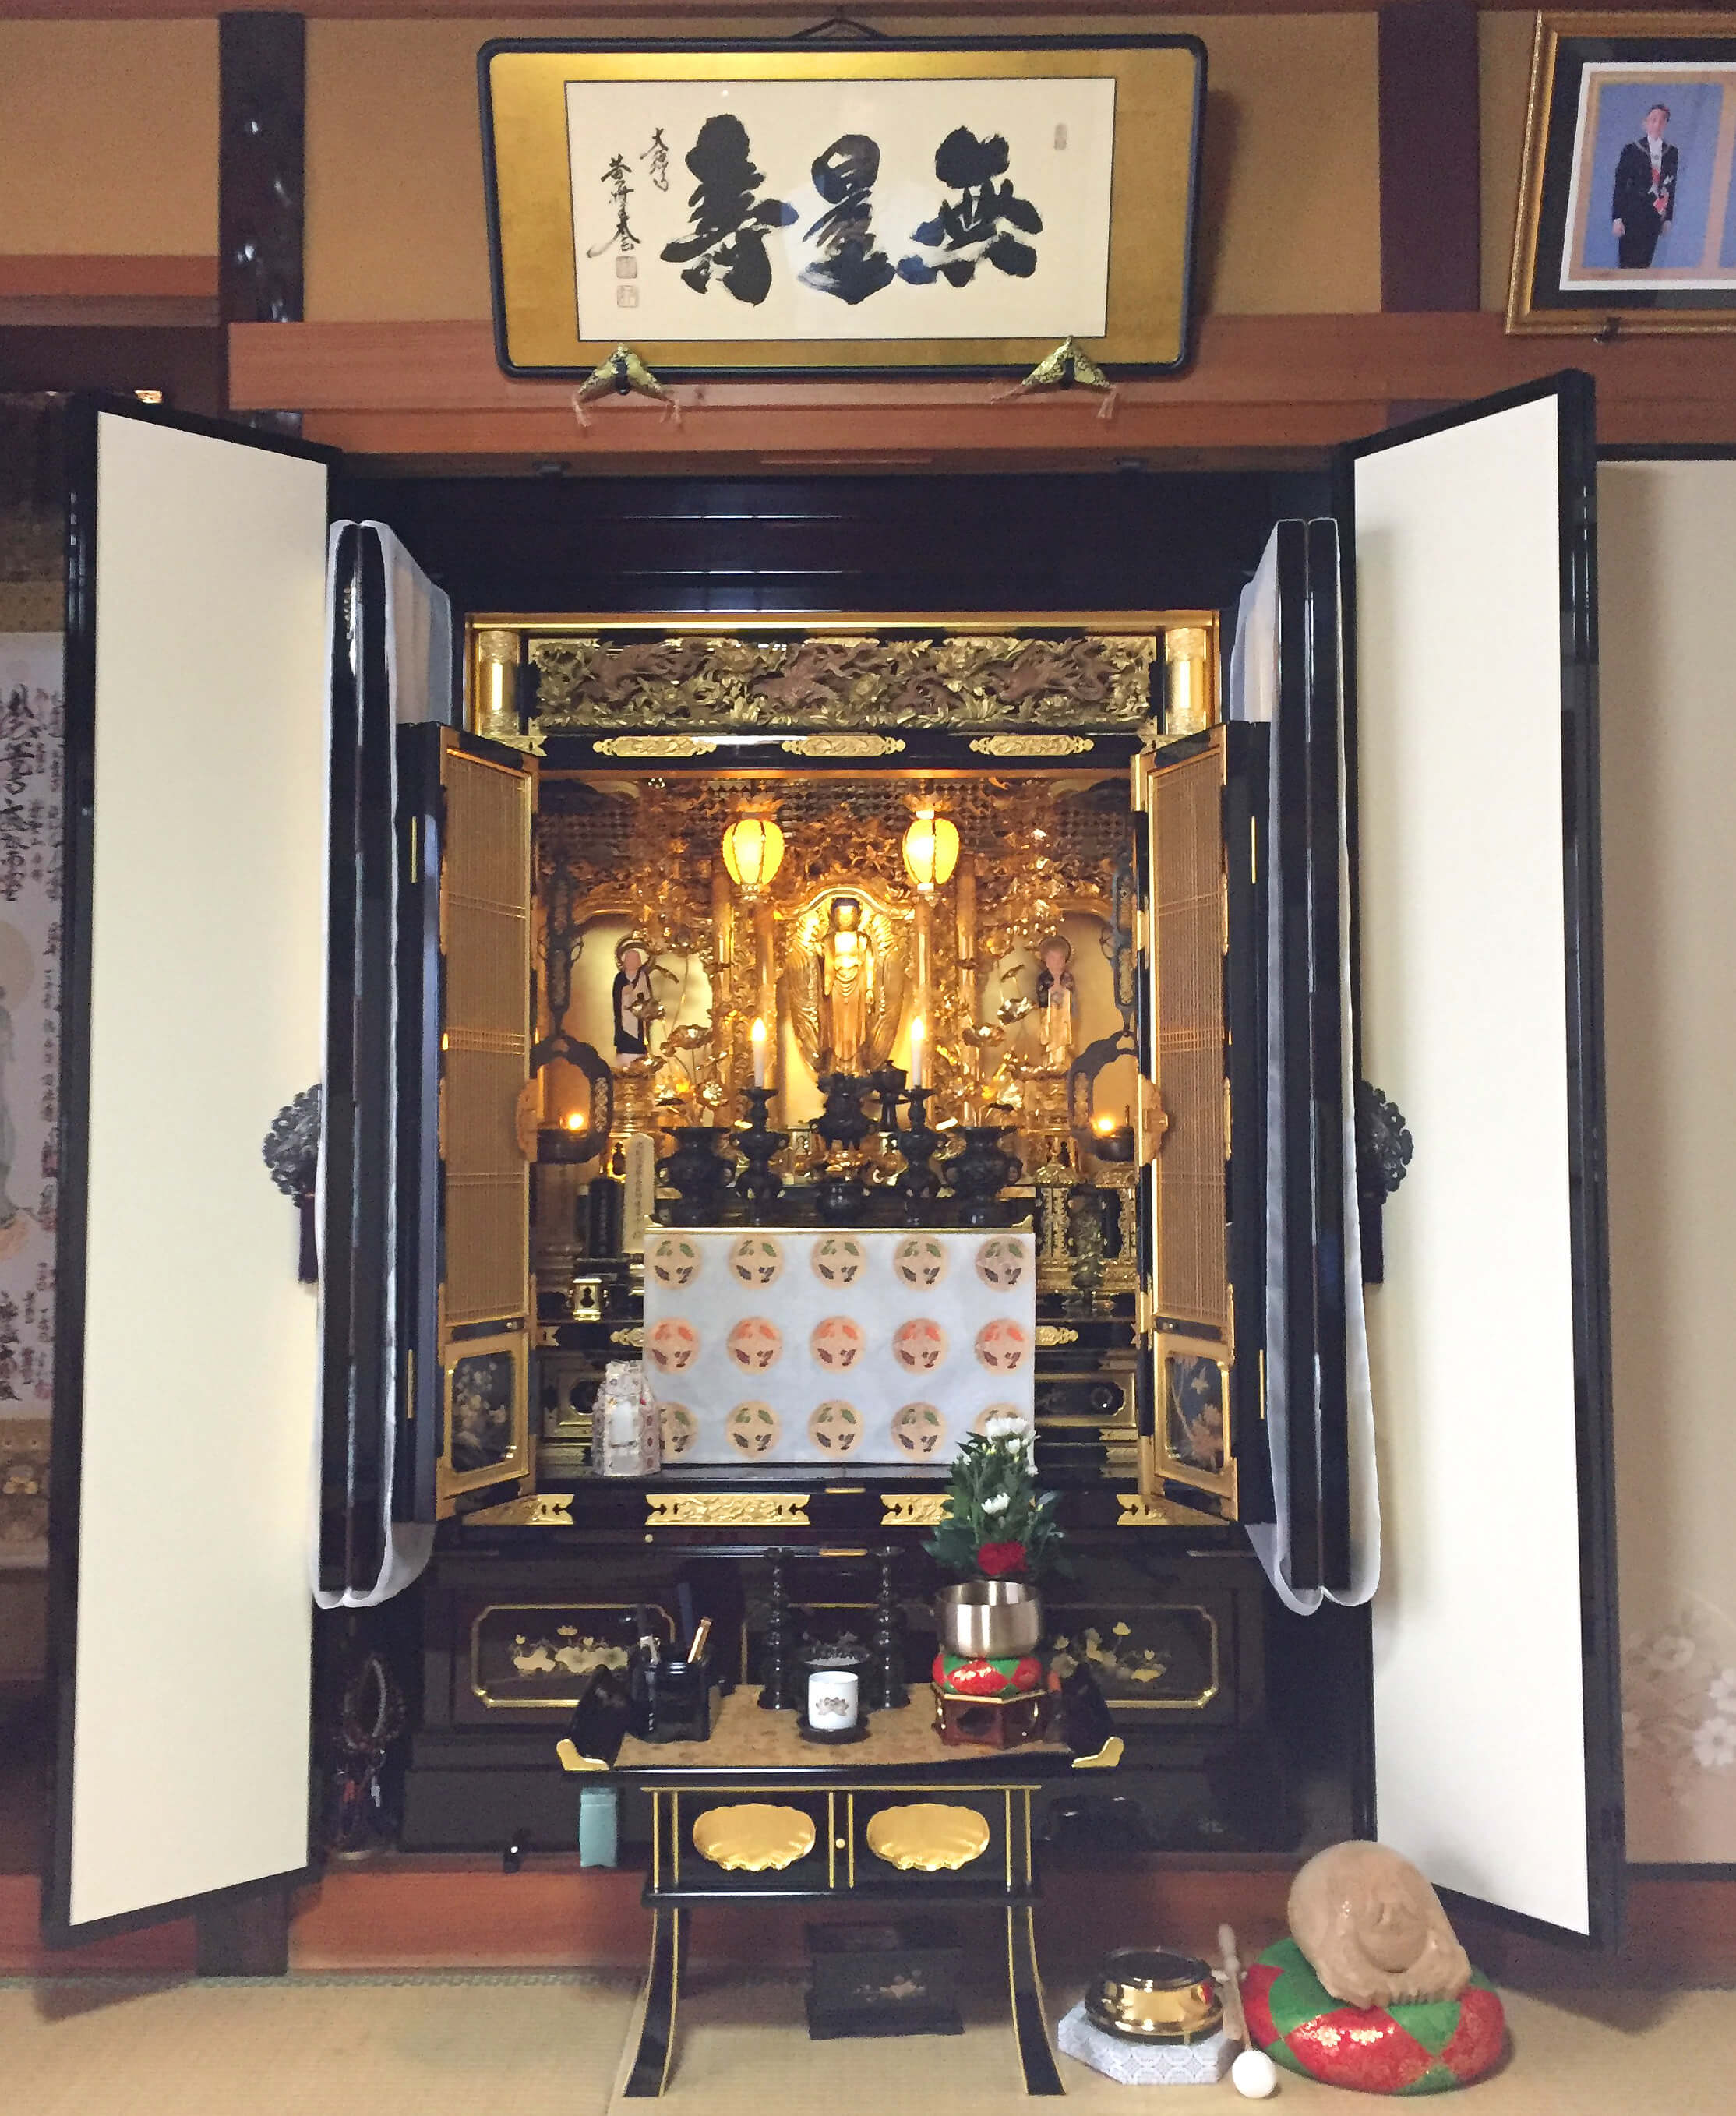 滋賀県東近江市にて、お仏壇の買い替えと仏像の修理、仏額の新調をさせ